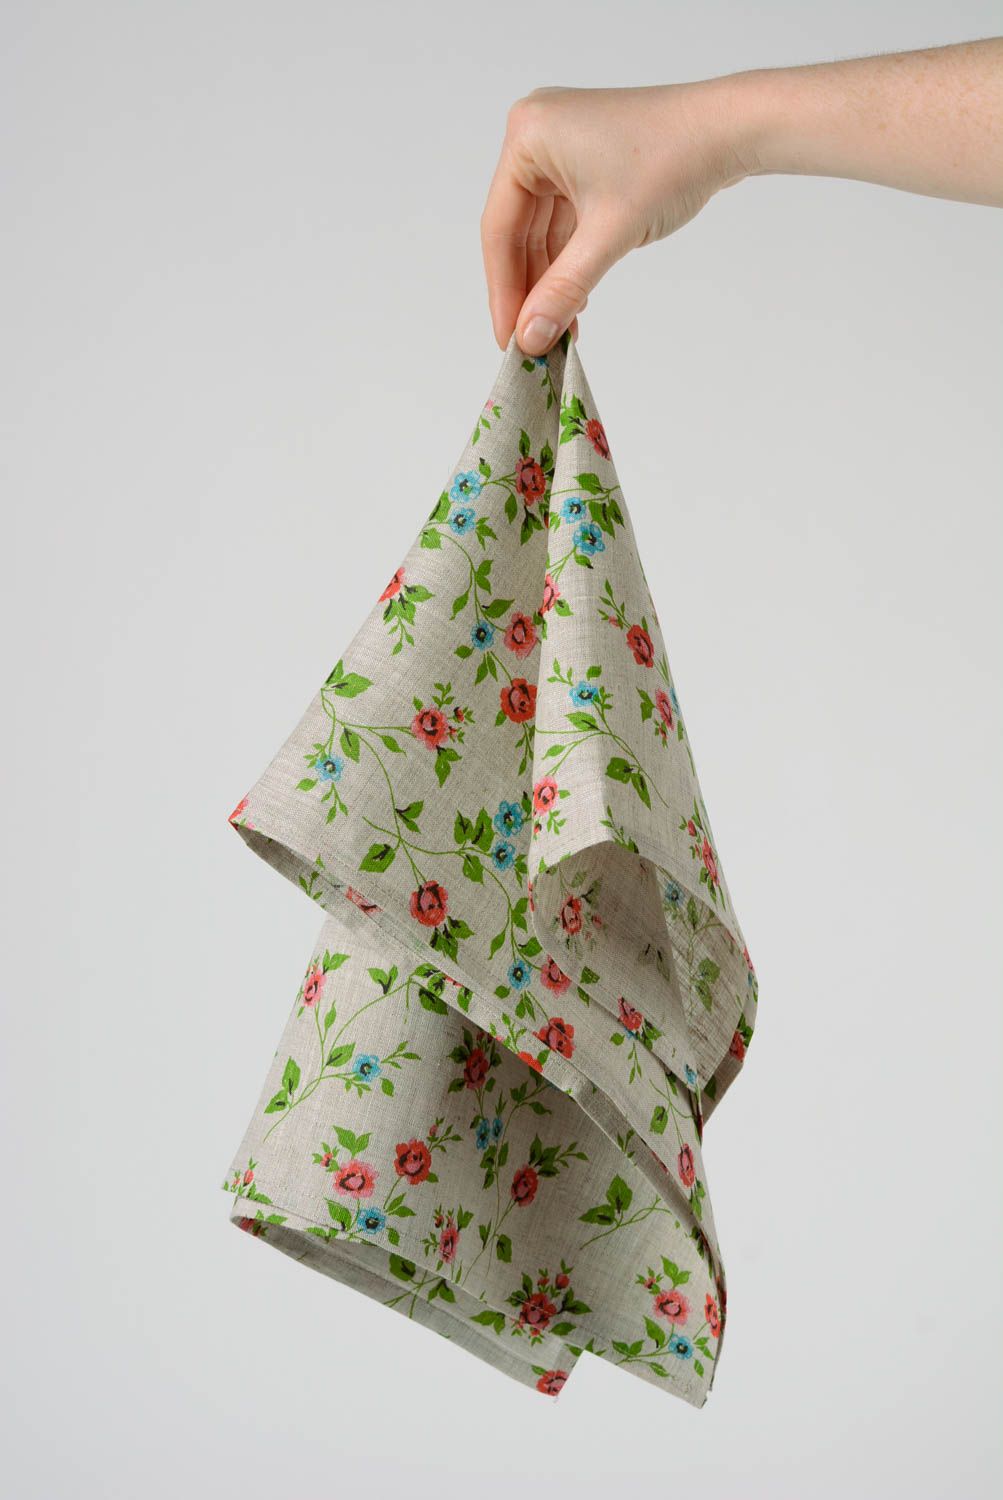 Кухонное полотенце из натуральной ткани ручной работы льняное красивое в цветочек фото 4